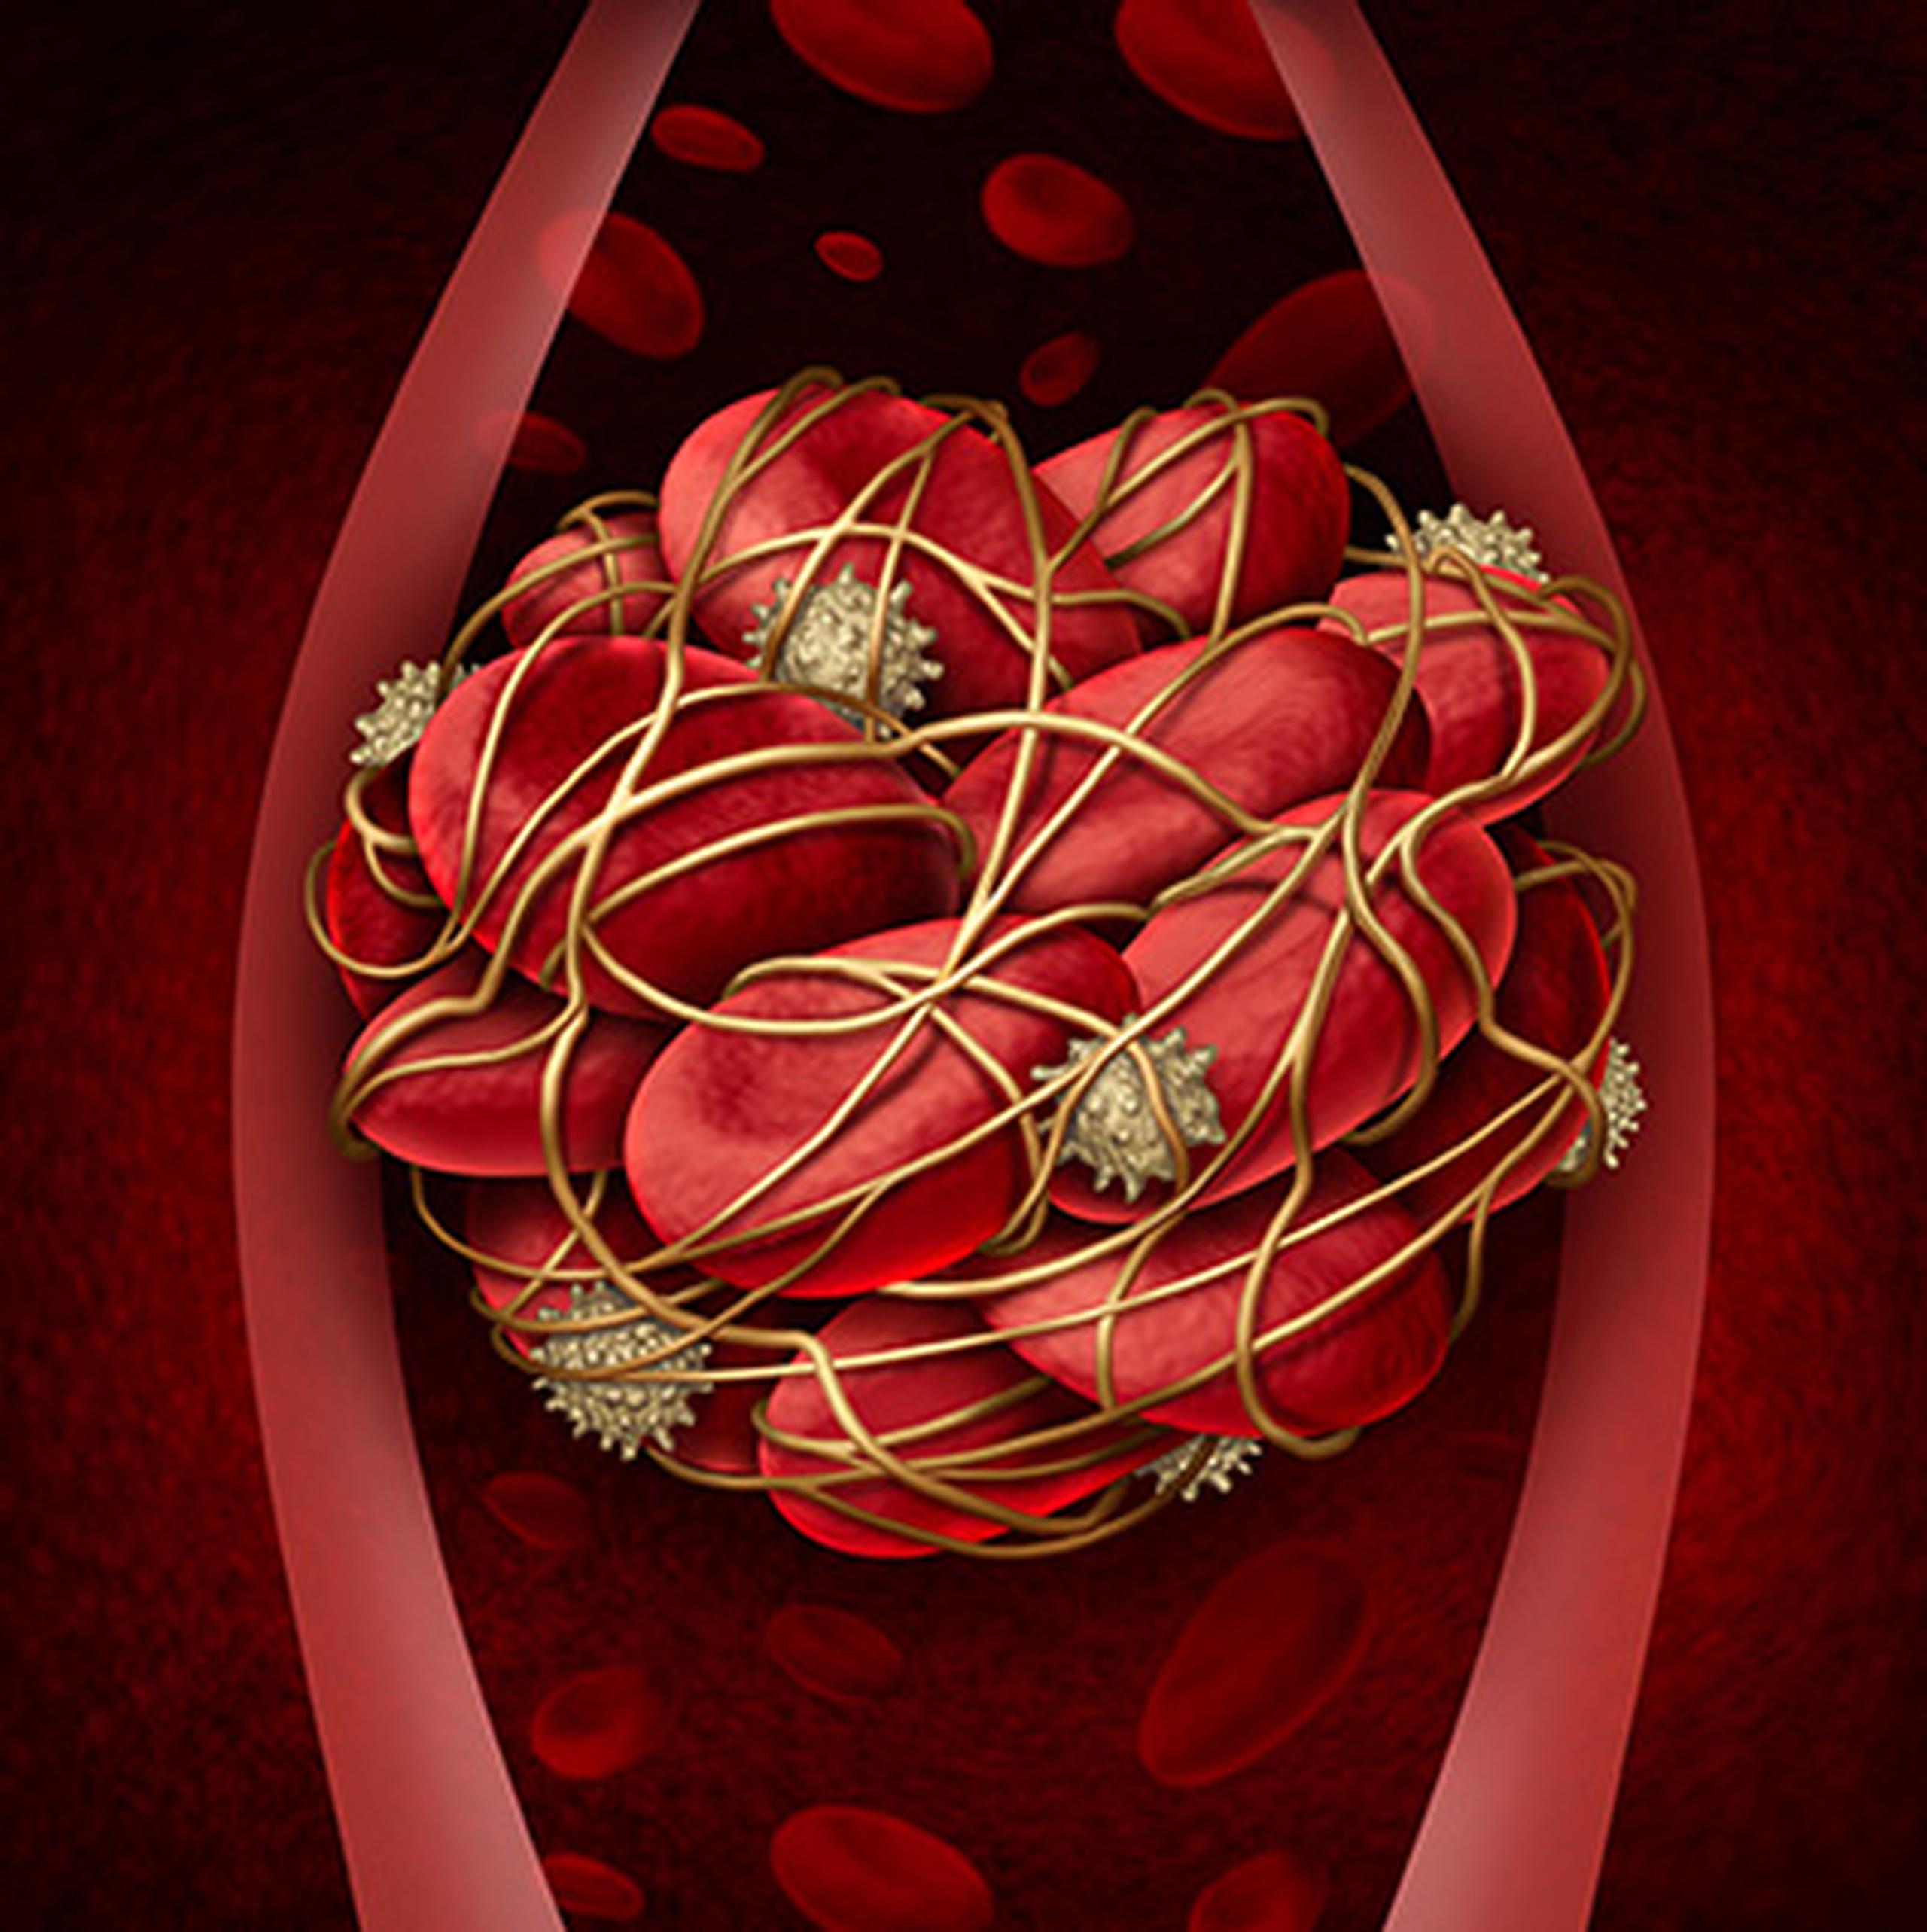 Ilustración de un coágulo de sangre proporcionada por los Centros para el Control y la Prevención de Enfermedades de los Estados Unidos.